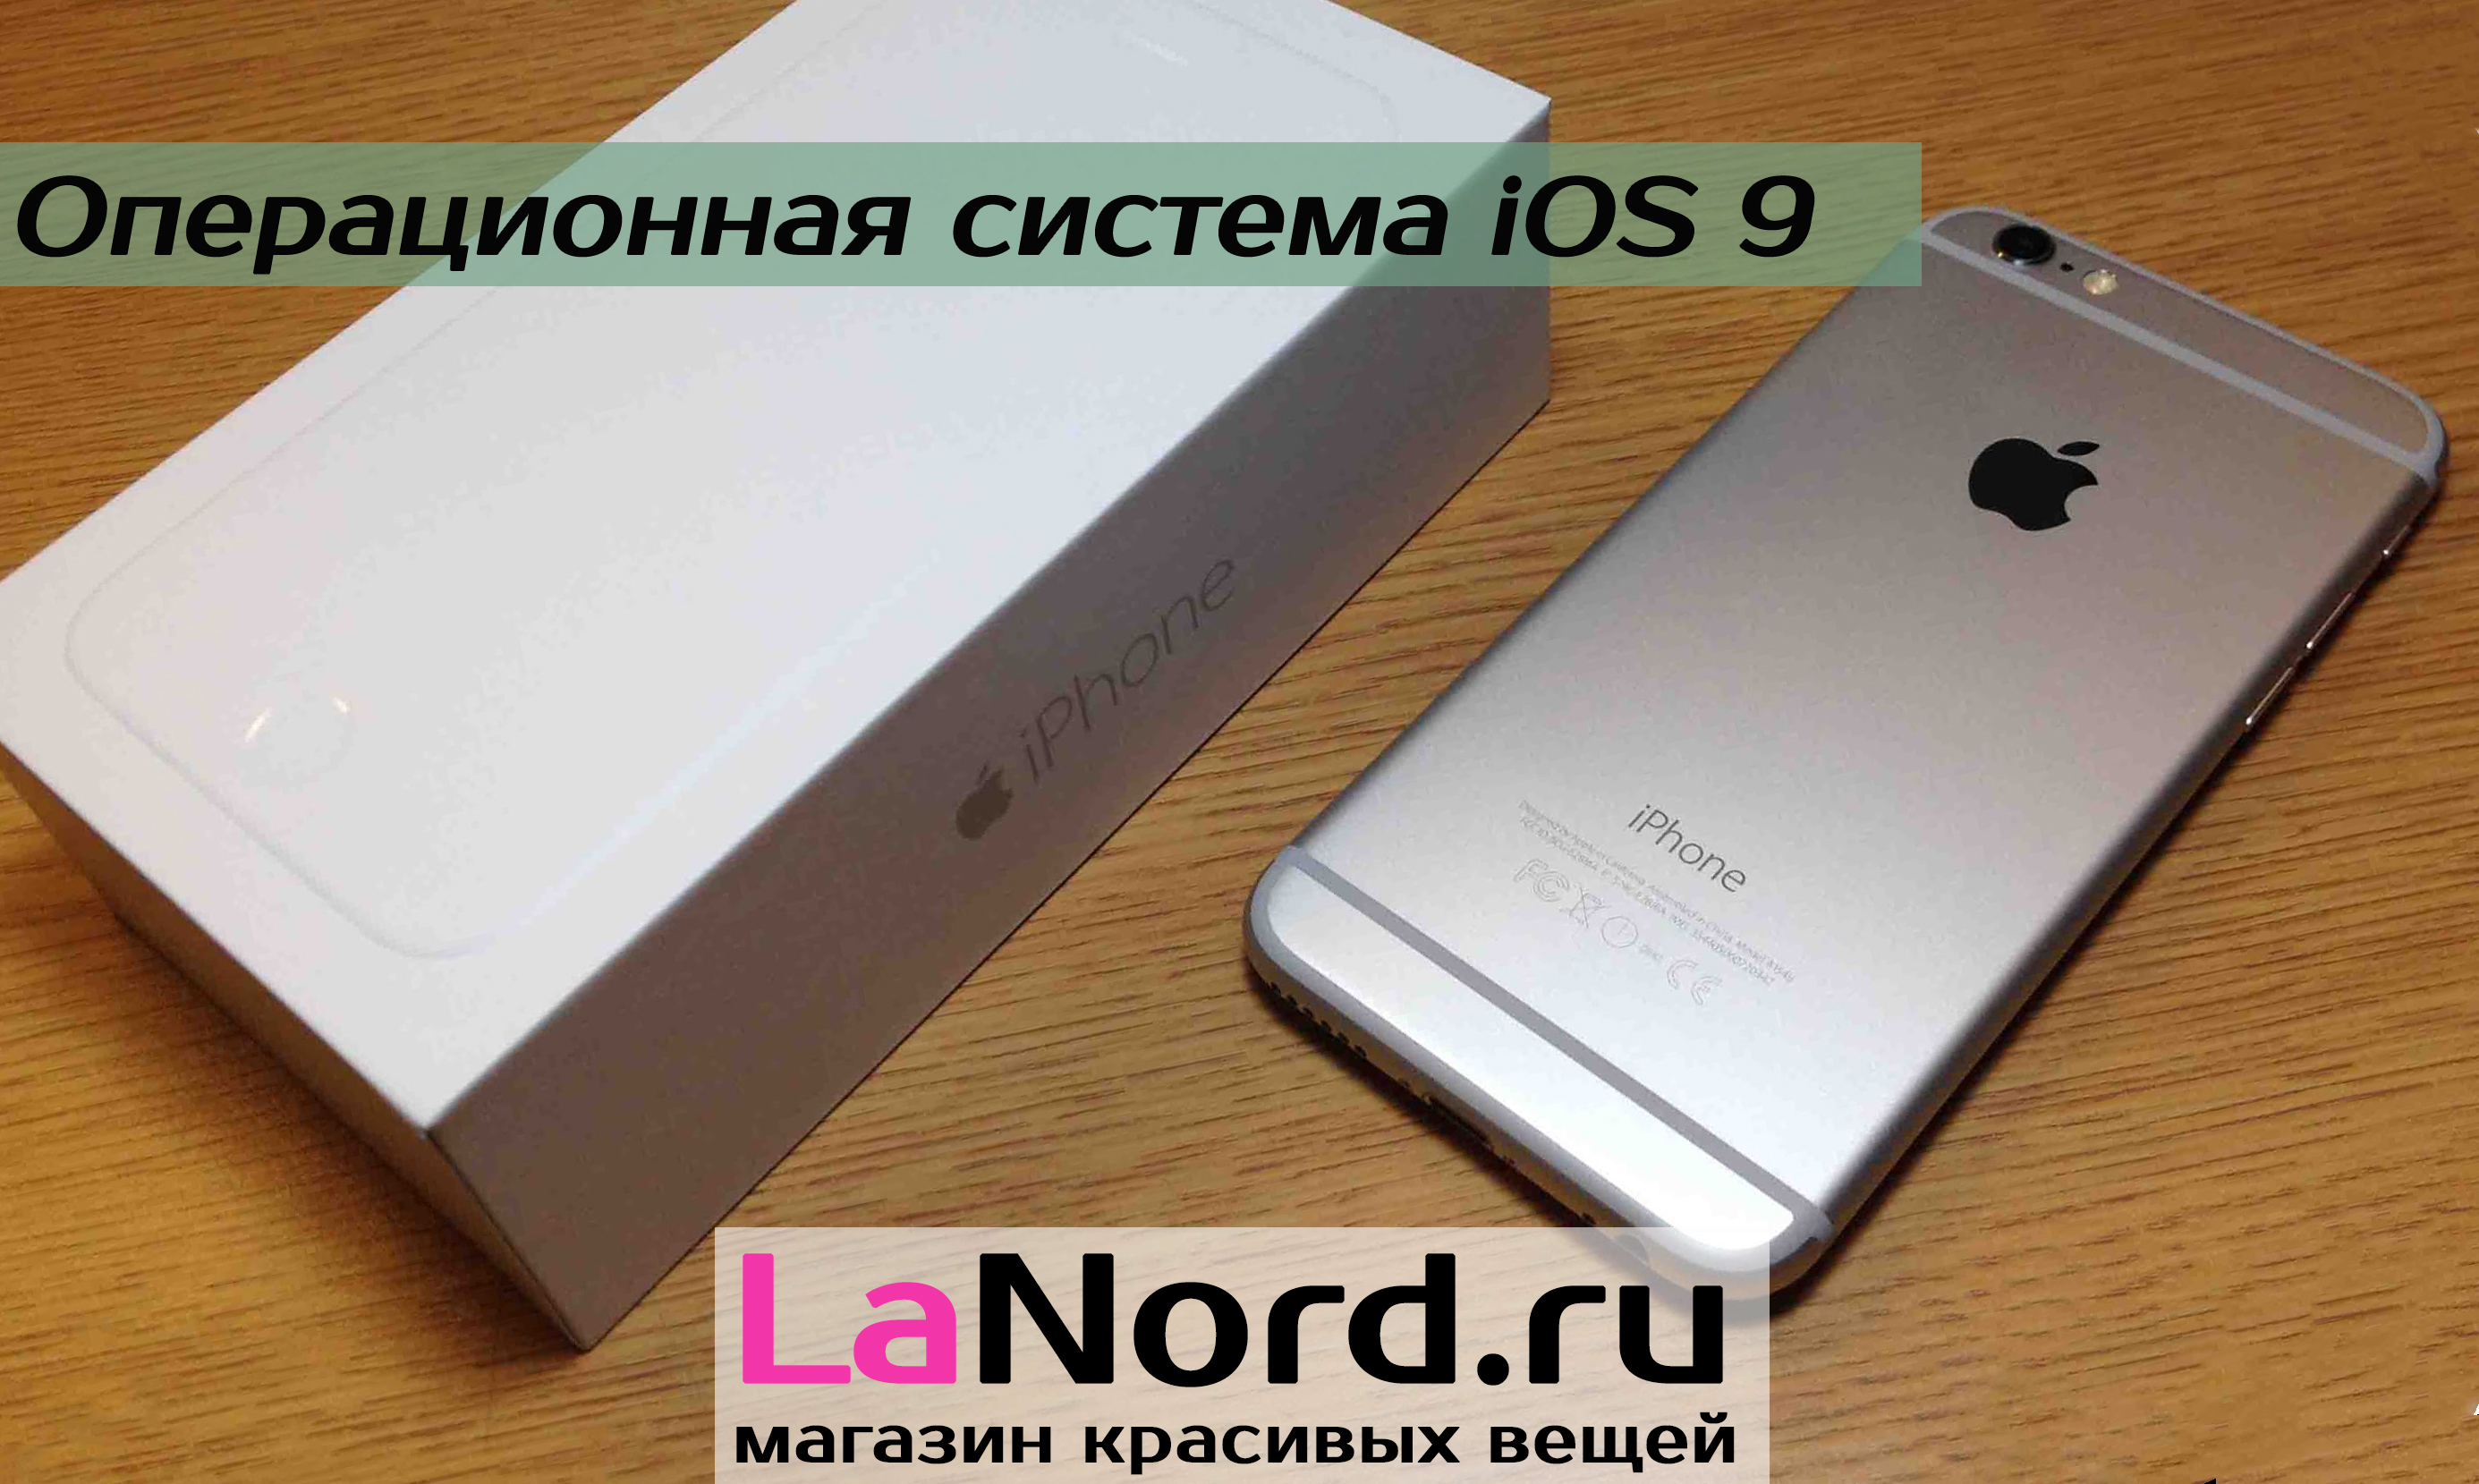 Apple iPhone 6 128GB Silver (белый) восстановленный